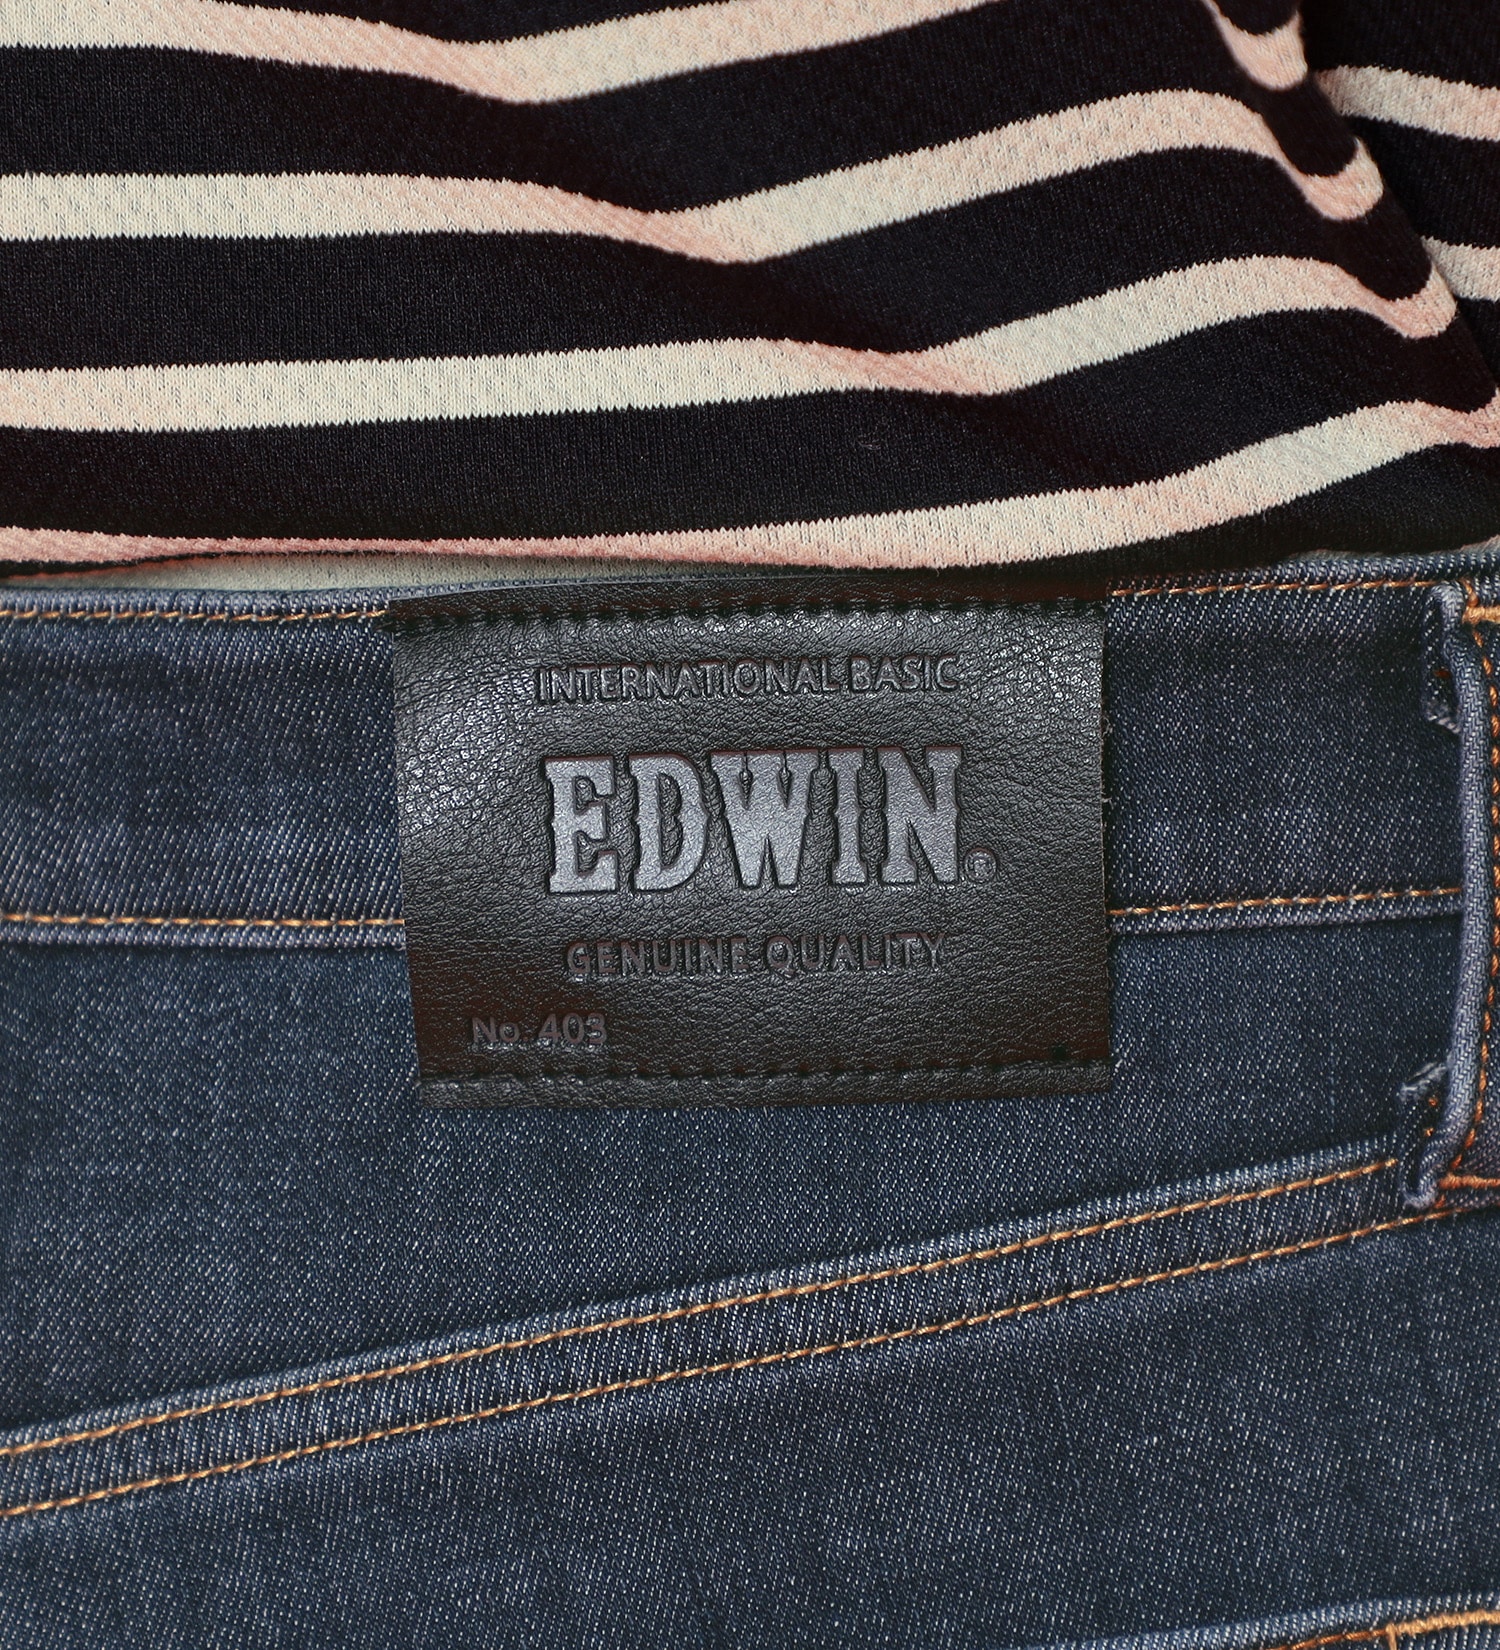 EDWIN(エドウイン)の【BLACKFRIDAY】2層で暖かい EDWIN インターナショナルベーシック レギュラーストレートパンツ403 WILD FIRE 2層ボンディング構造 【暖】|パンツ/パンツ/メンズ|濃色ブルー